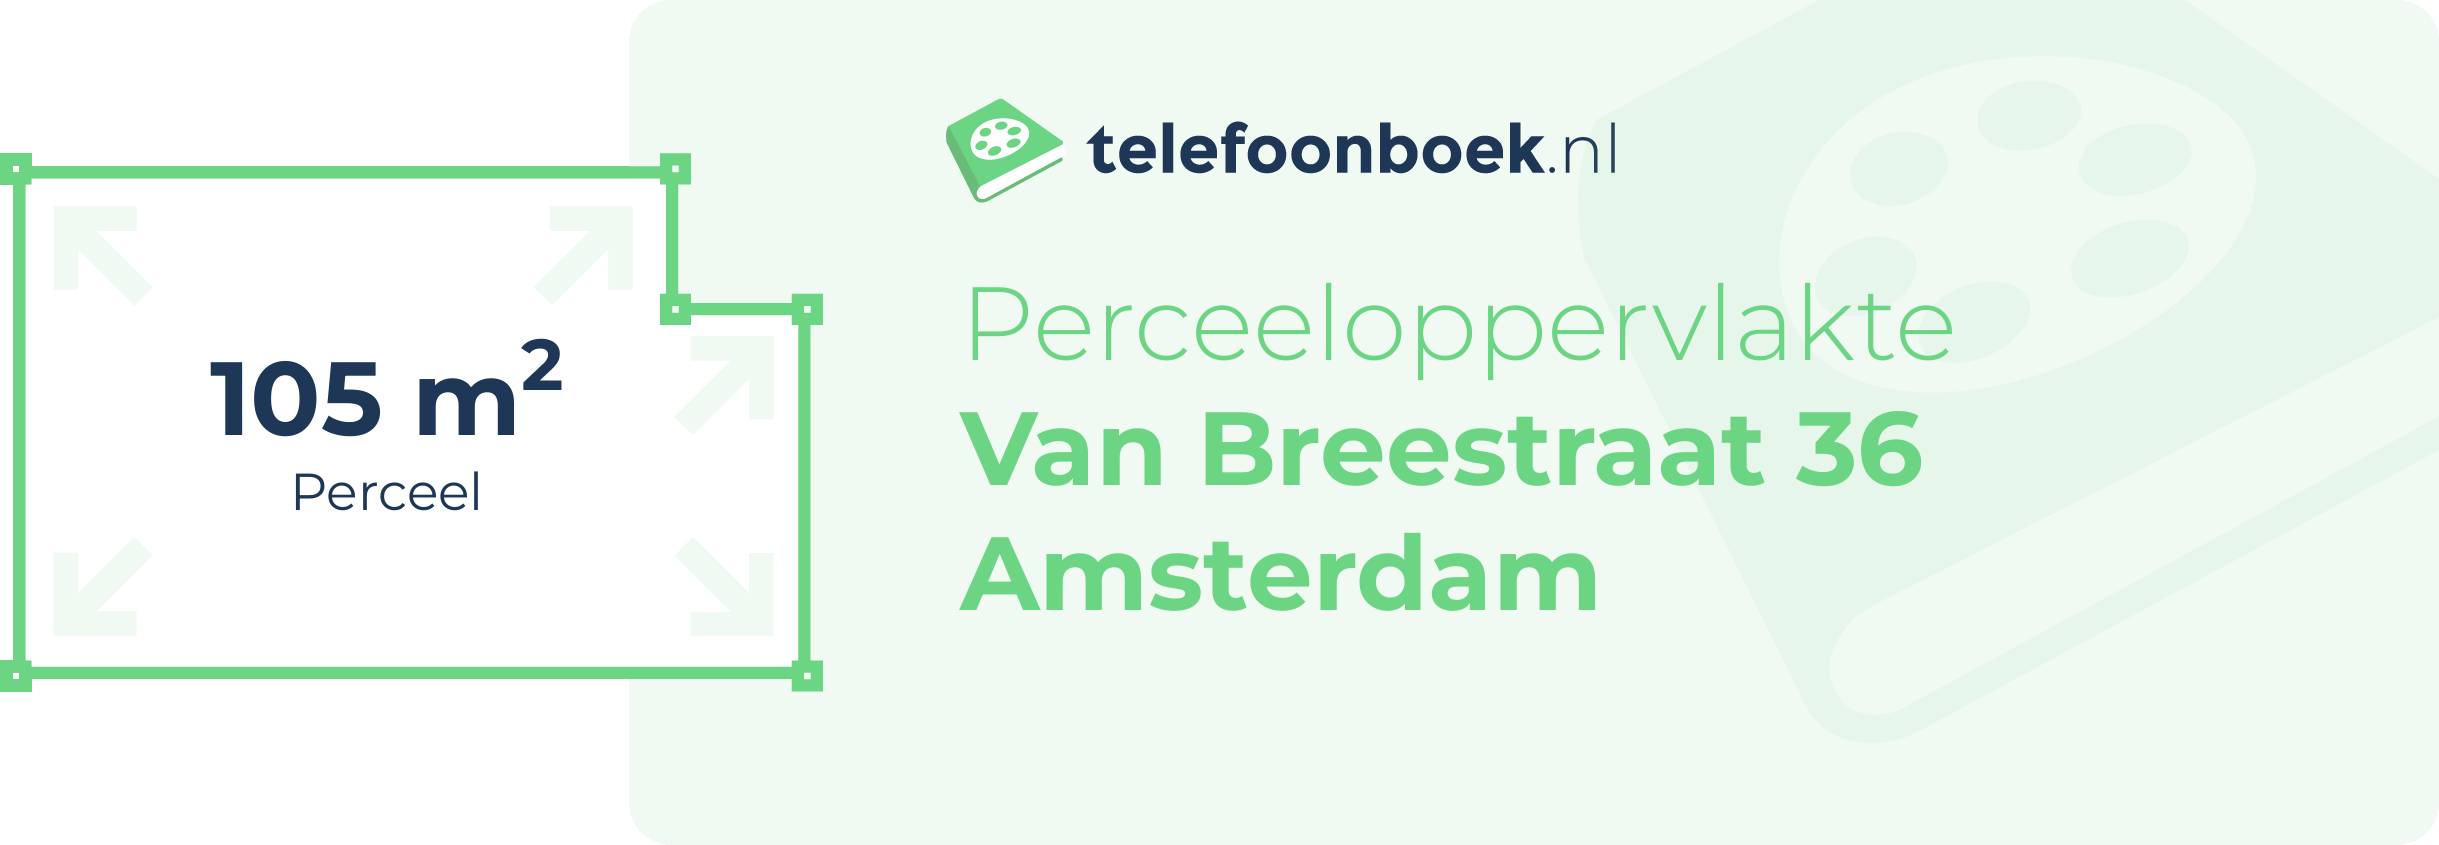 Perceeloppervlakte Van Breestraat 36 Amsterdam